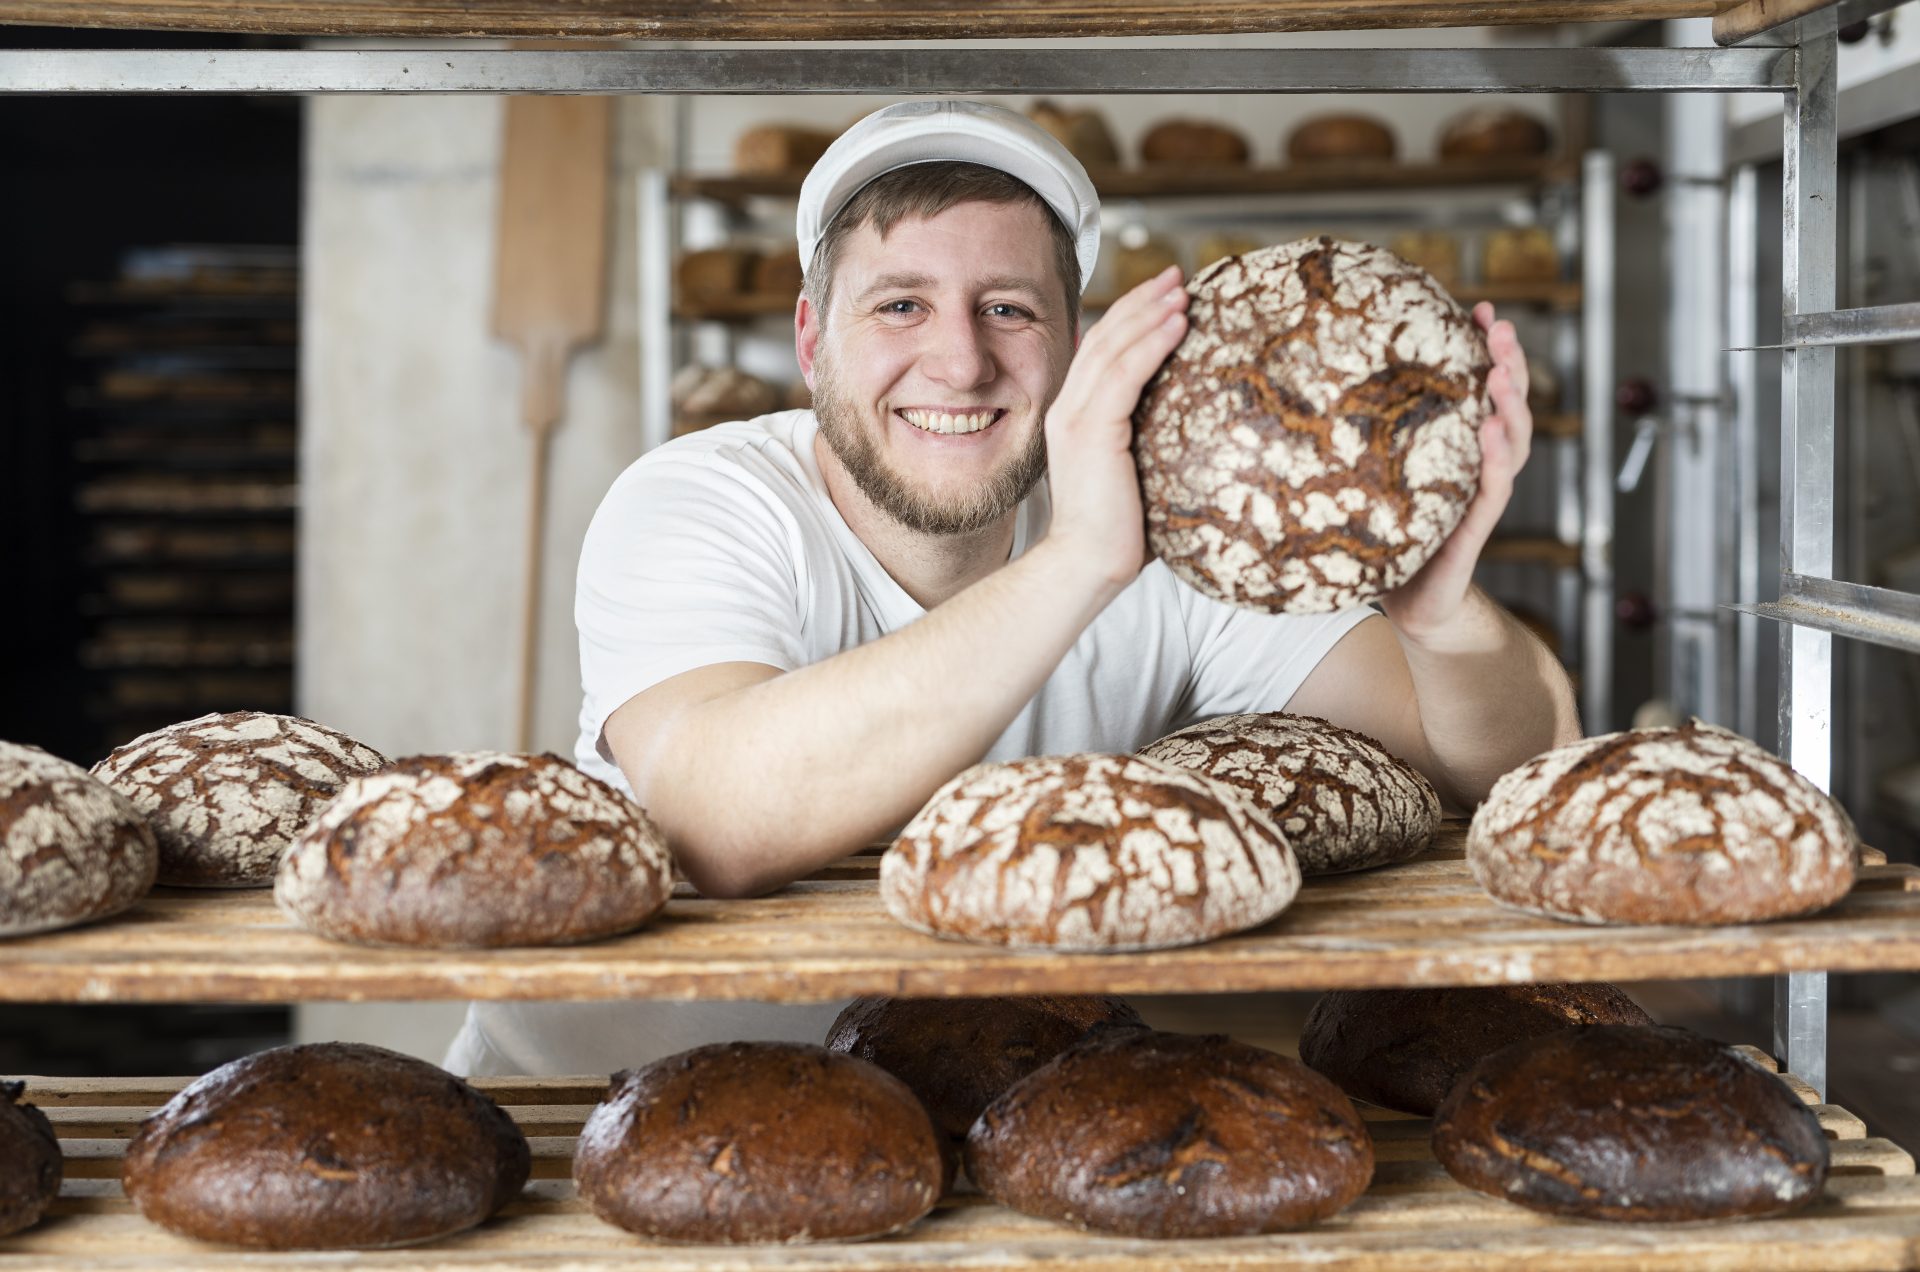 Bäcker Nick in seiner Backstube hält ein rundes, frisch gebackenes Brot.